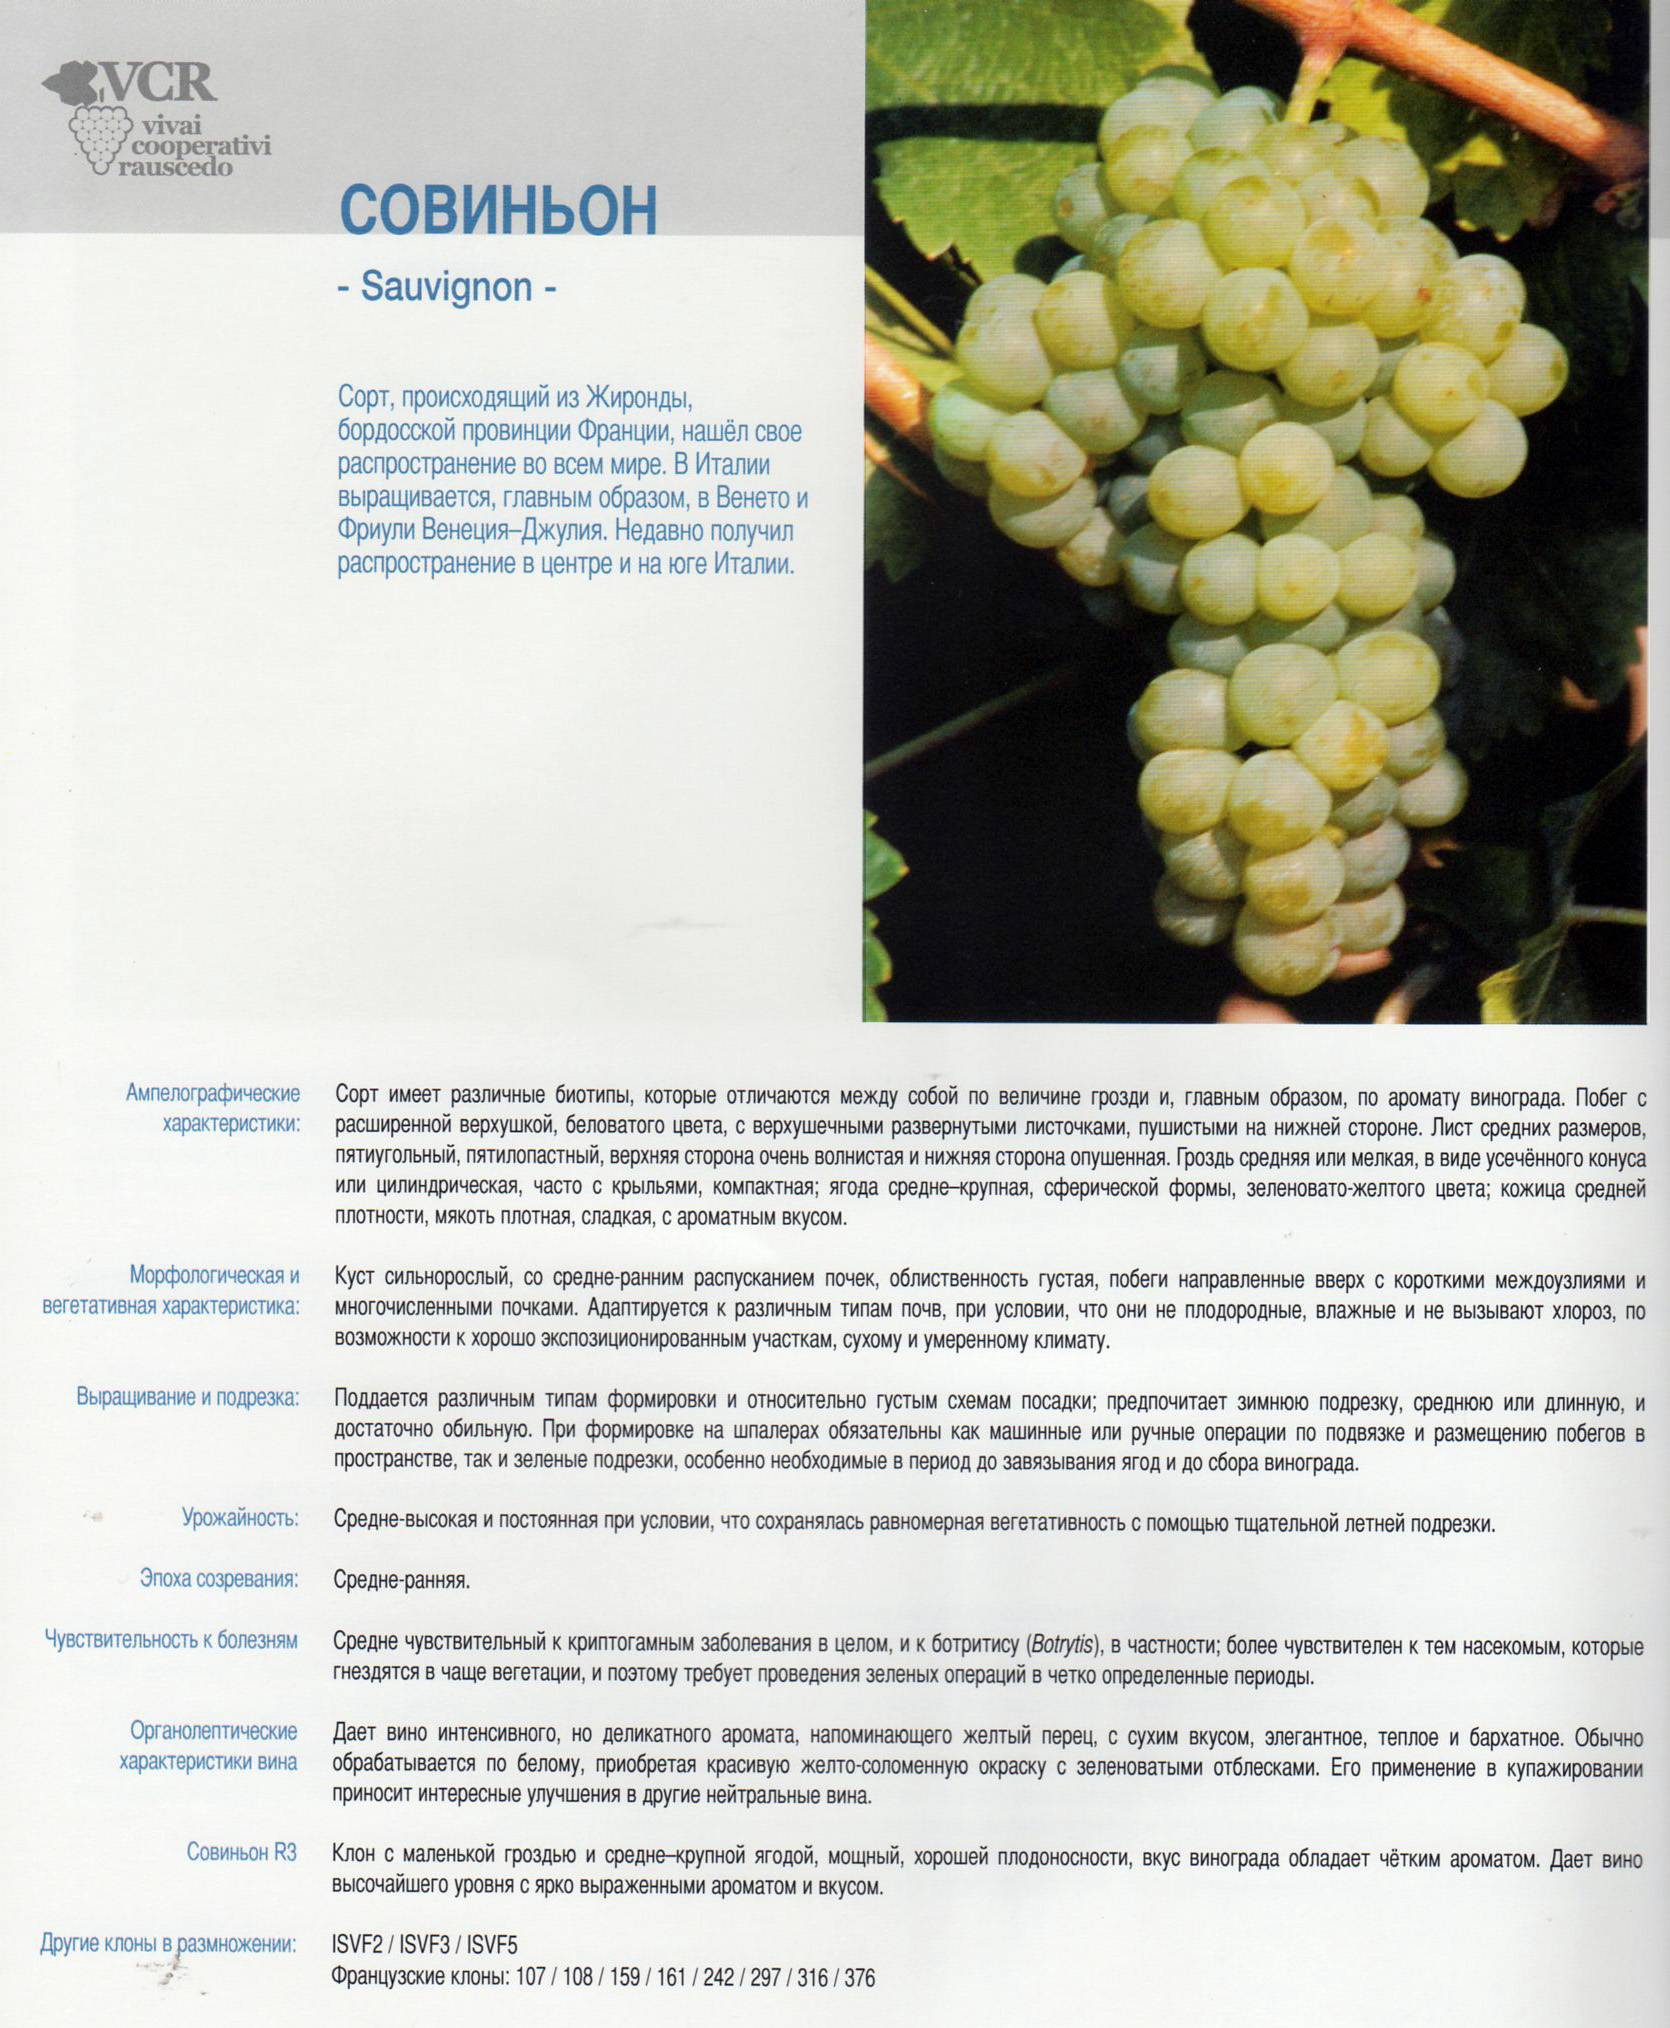 Виноград виктор: описание сорта, фото, отзывы | qlumba.com